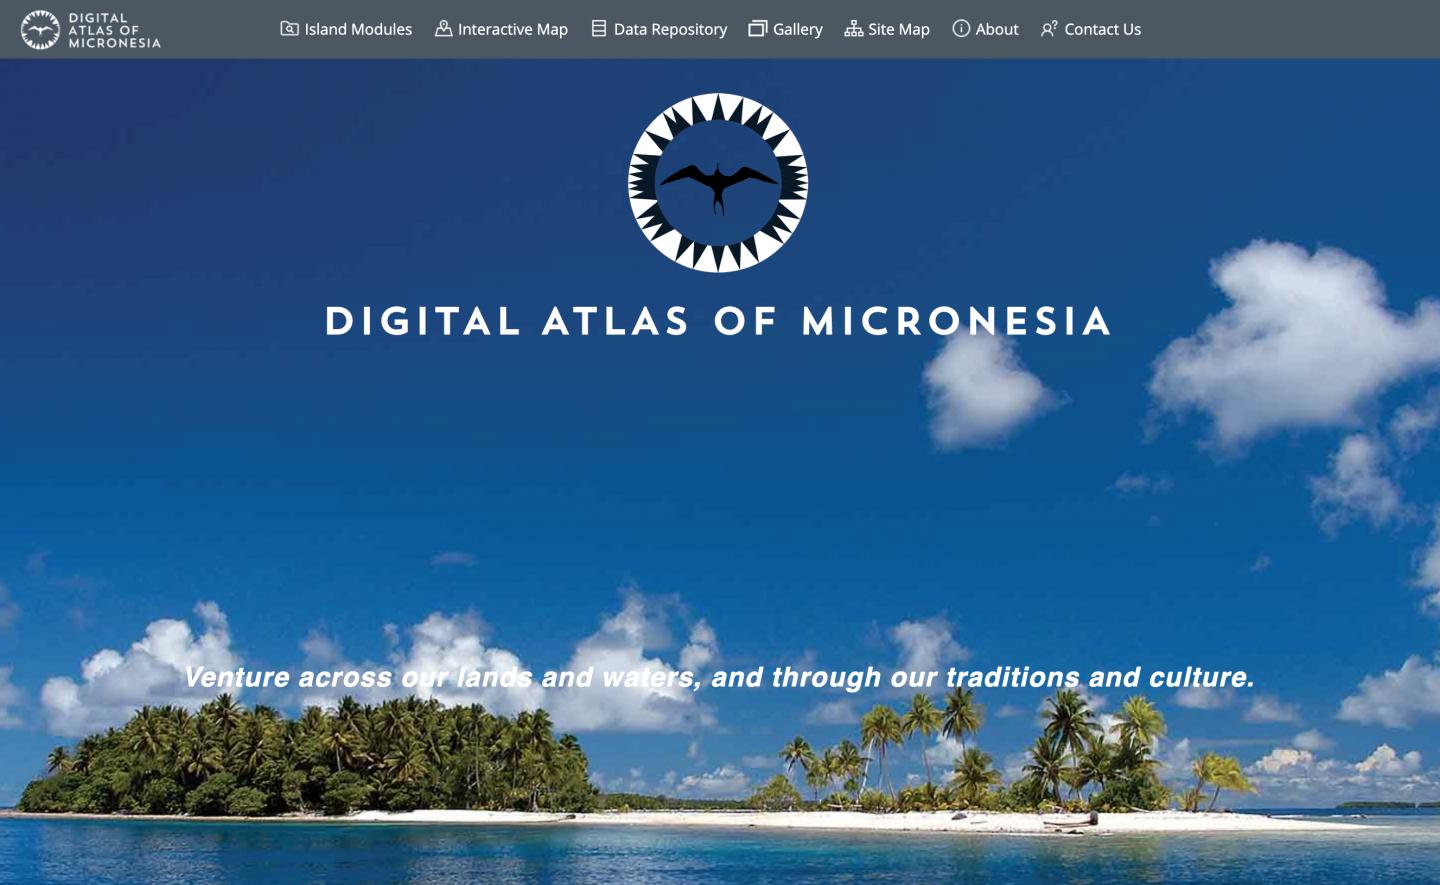 Digital Atlas of Micronesia